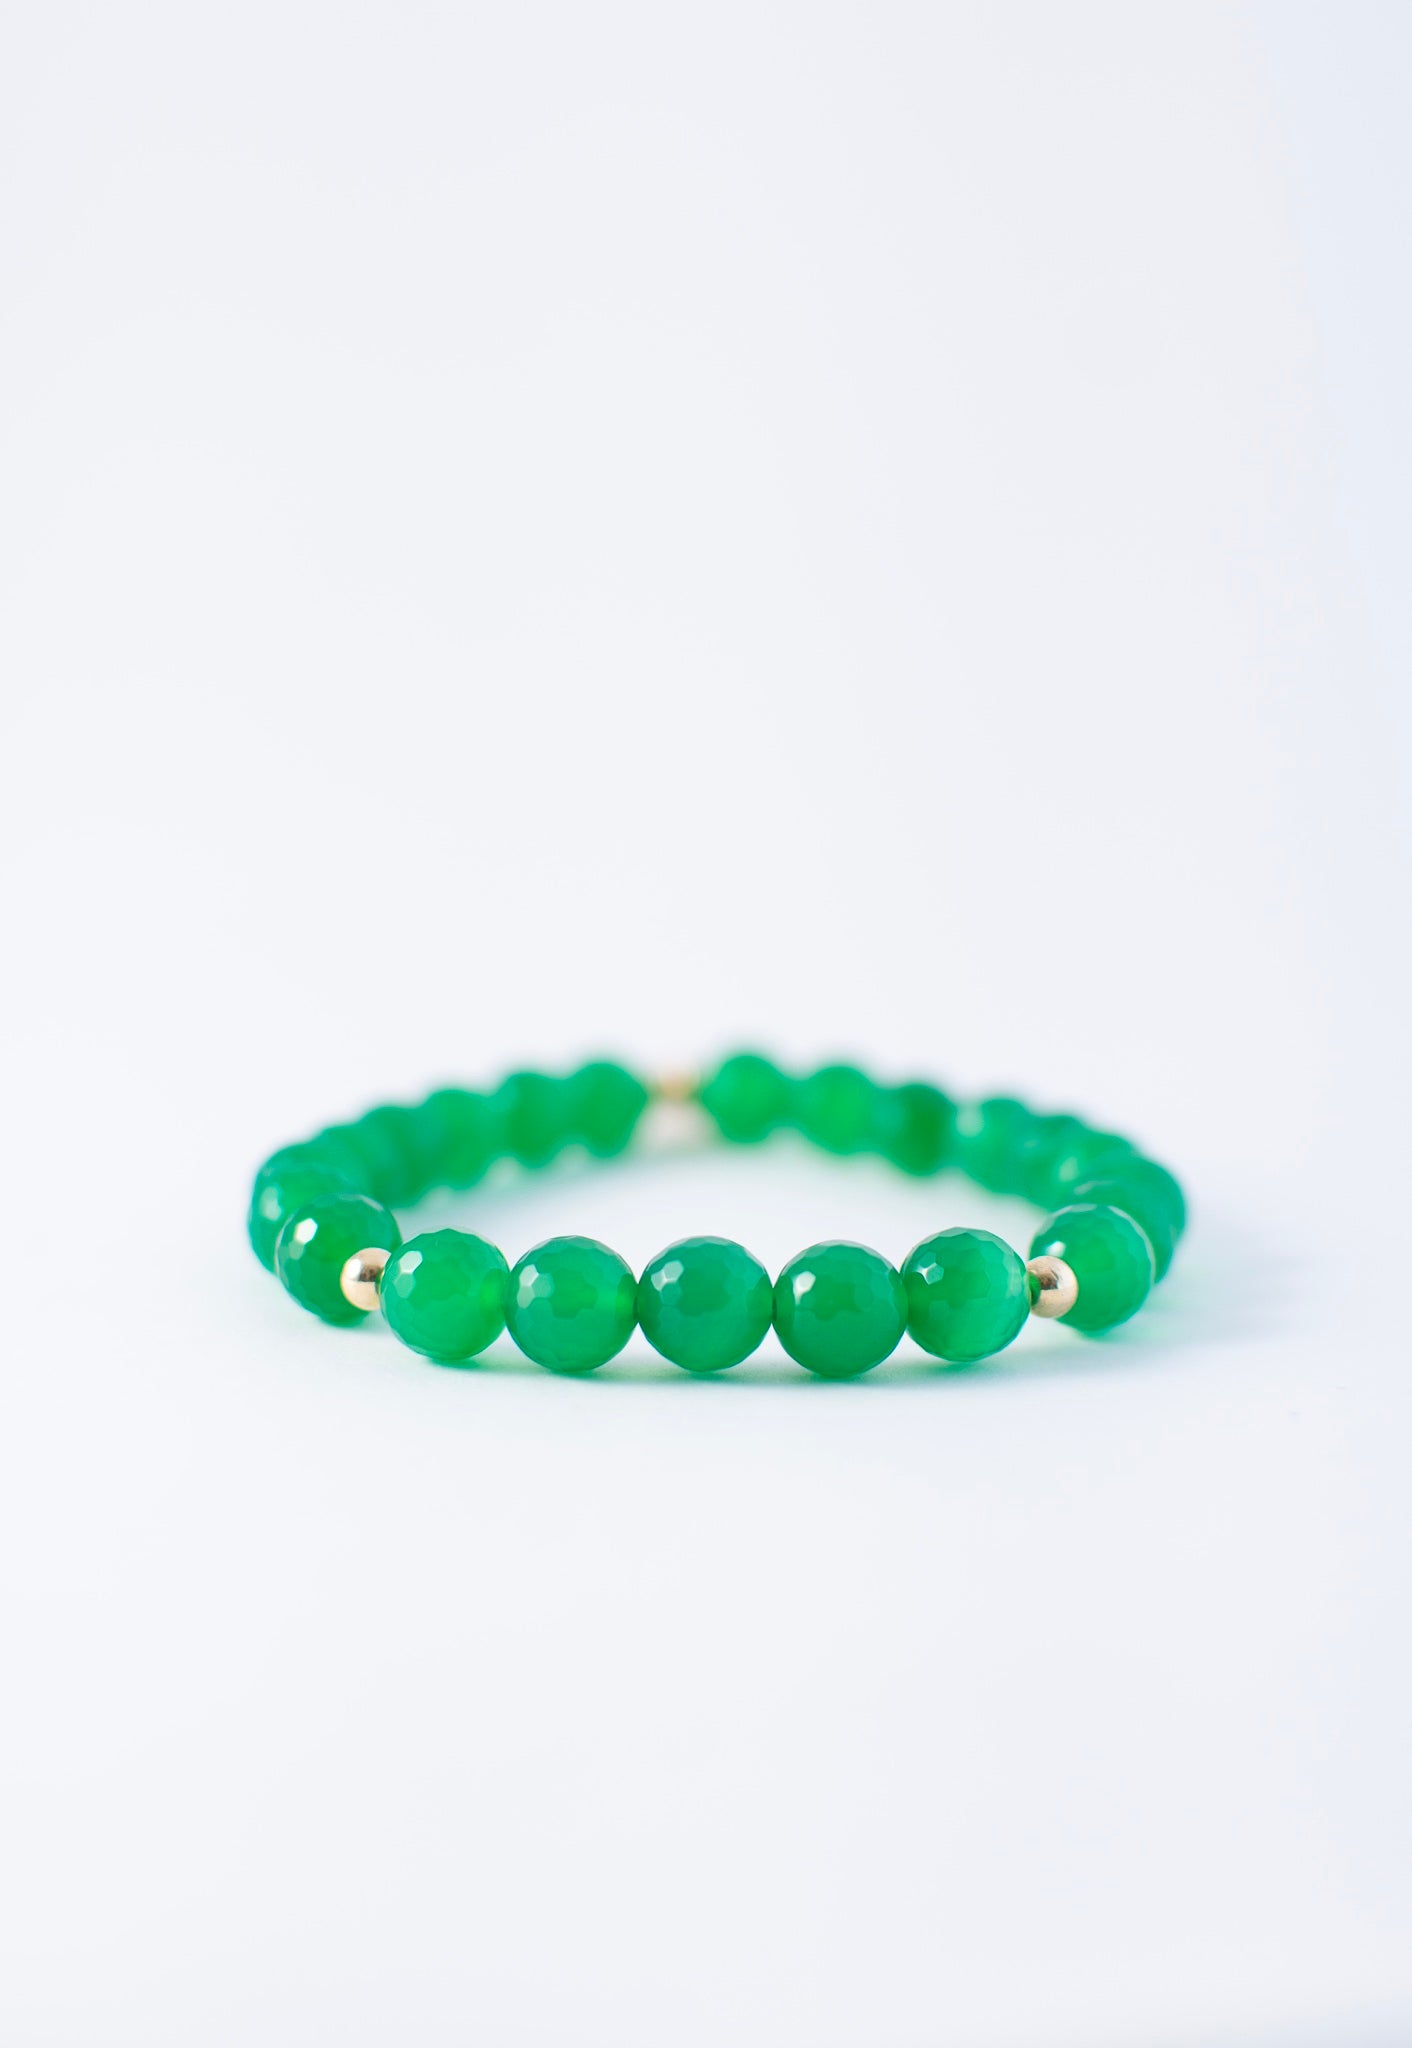 Turquoise Green Stone Men's Name Bracelet - Cross Bracelet